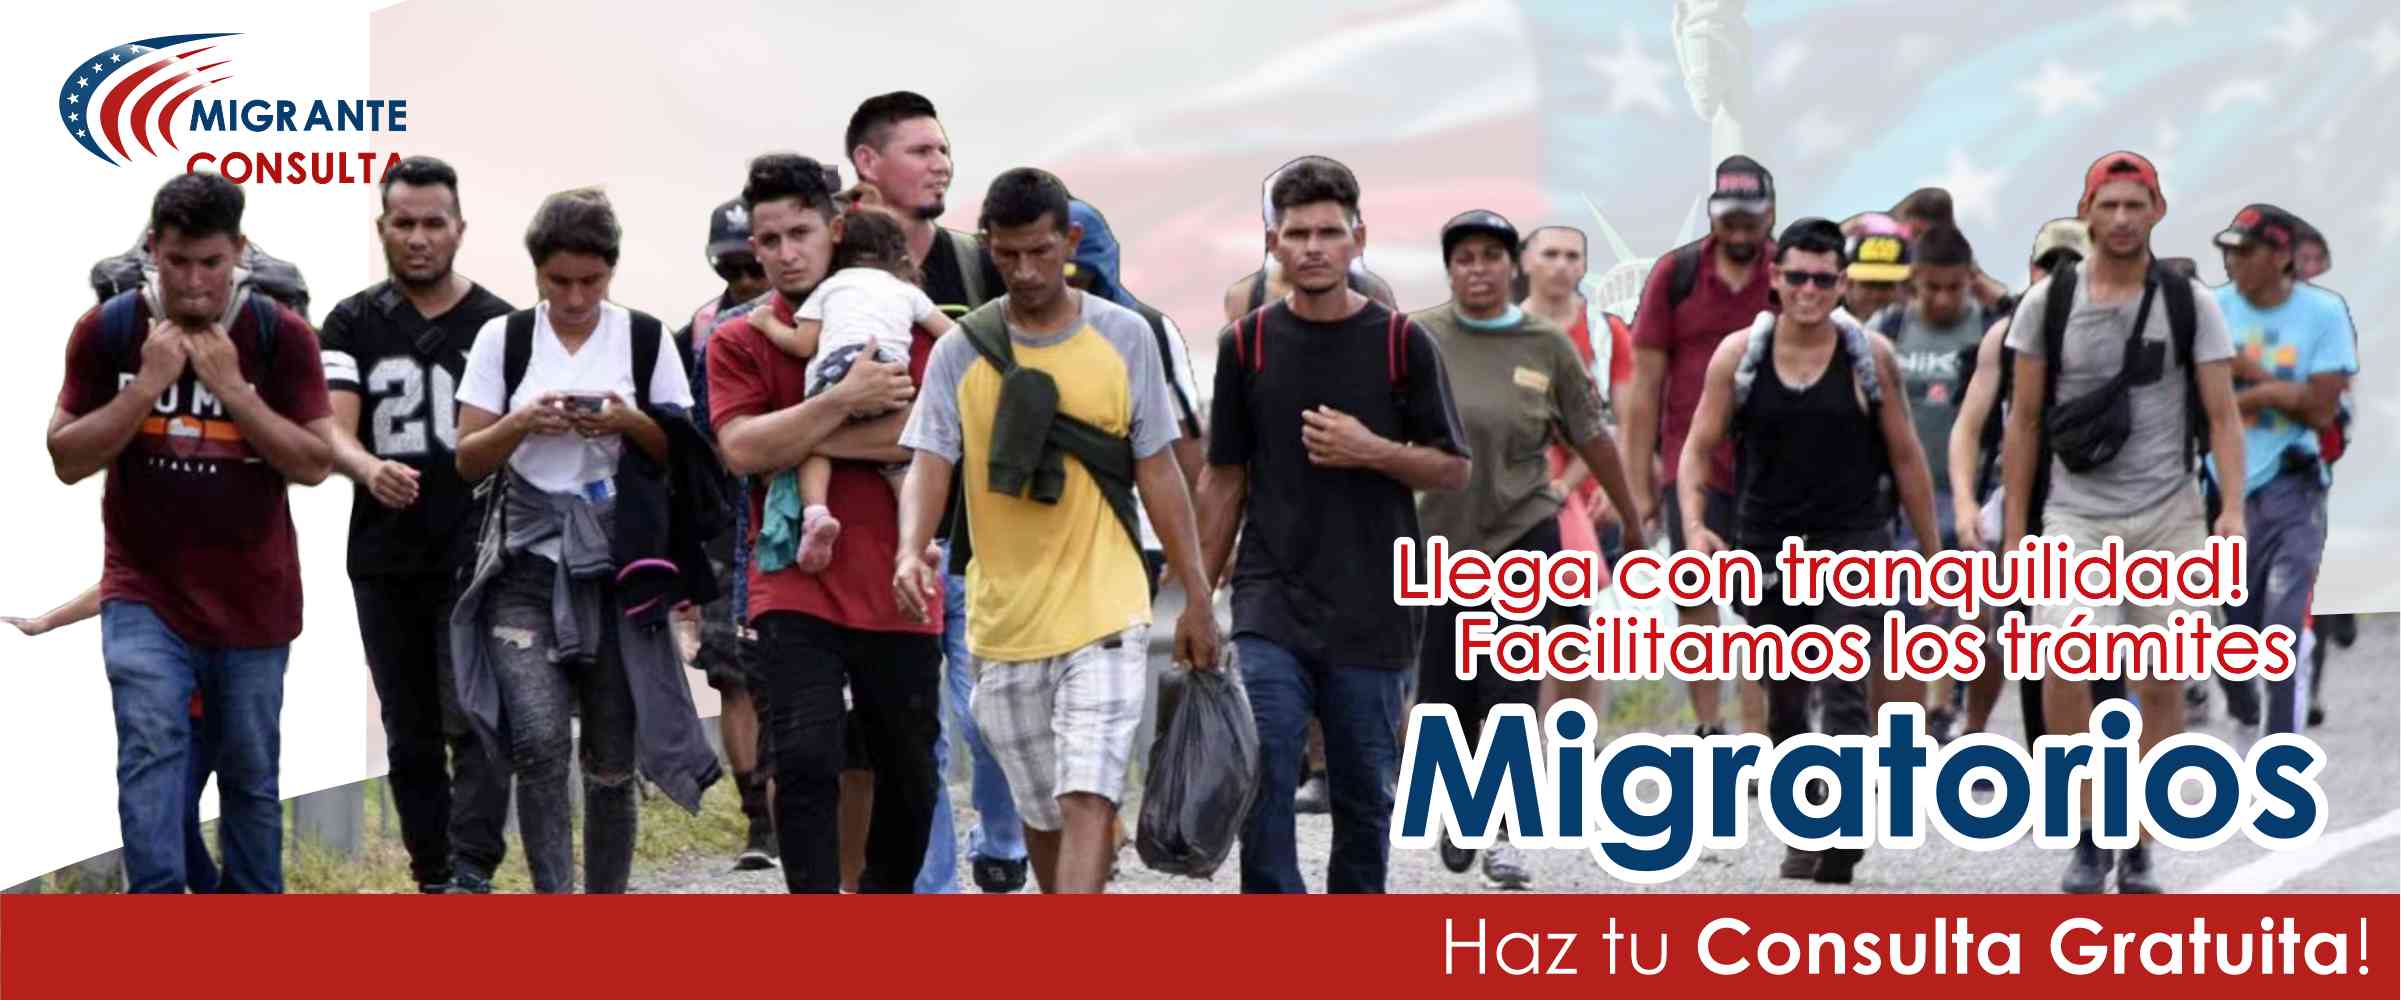 Banner Consulta Migrante 2404 01